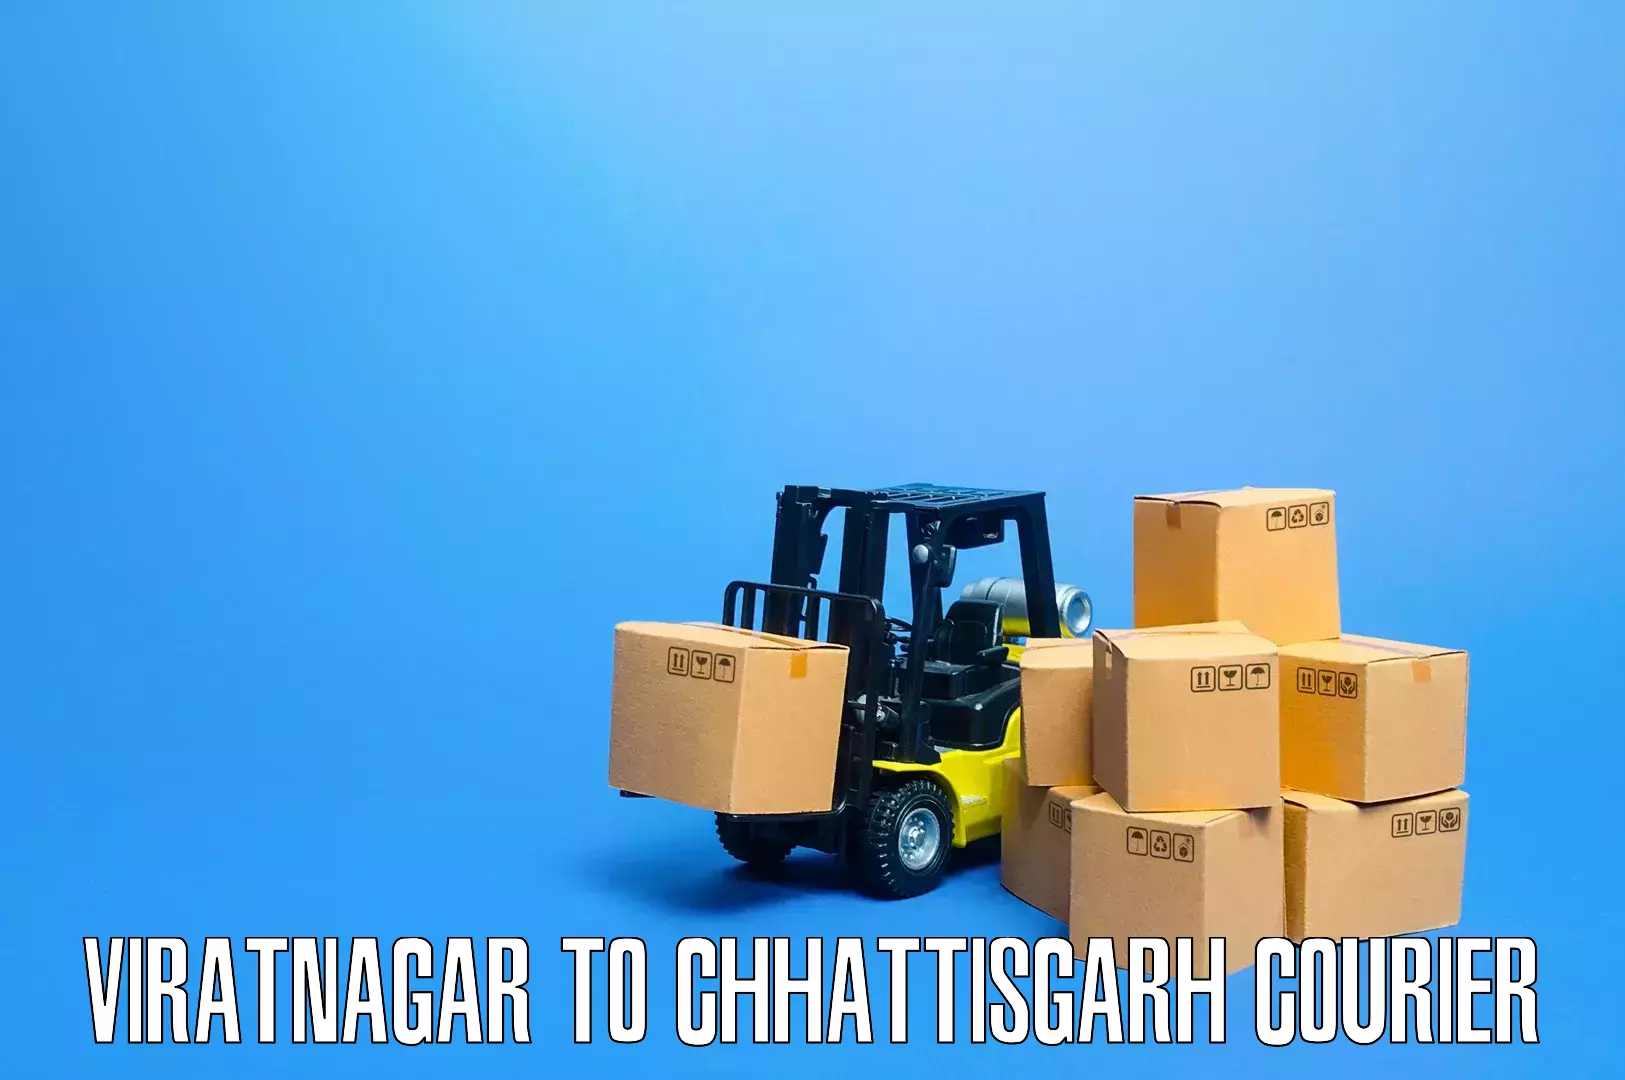 Professional furniture moving Viratnagar to Dabhra